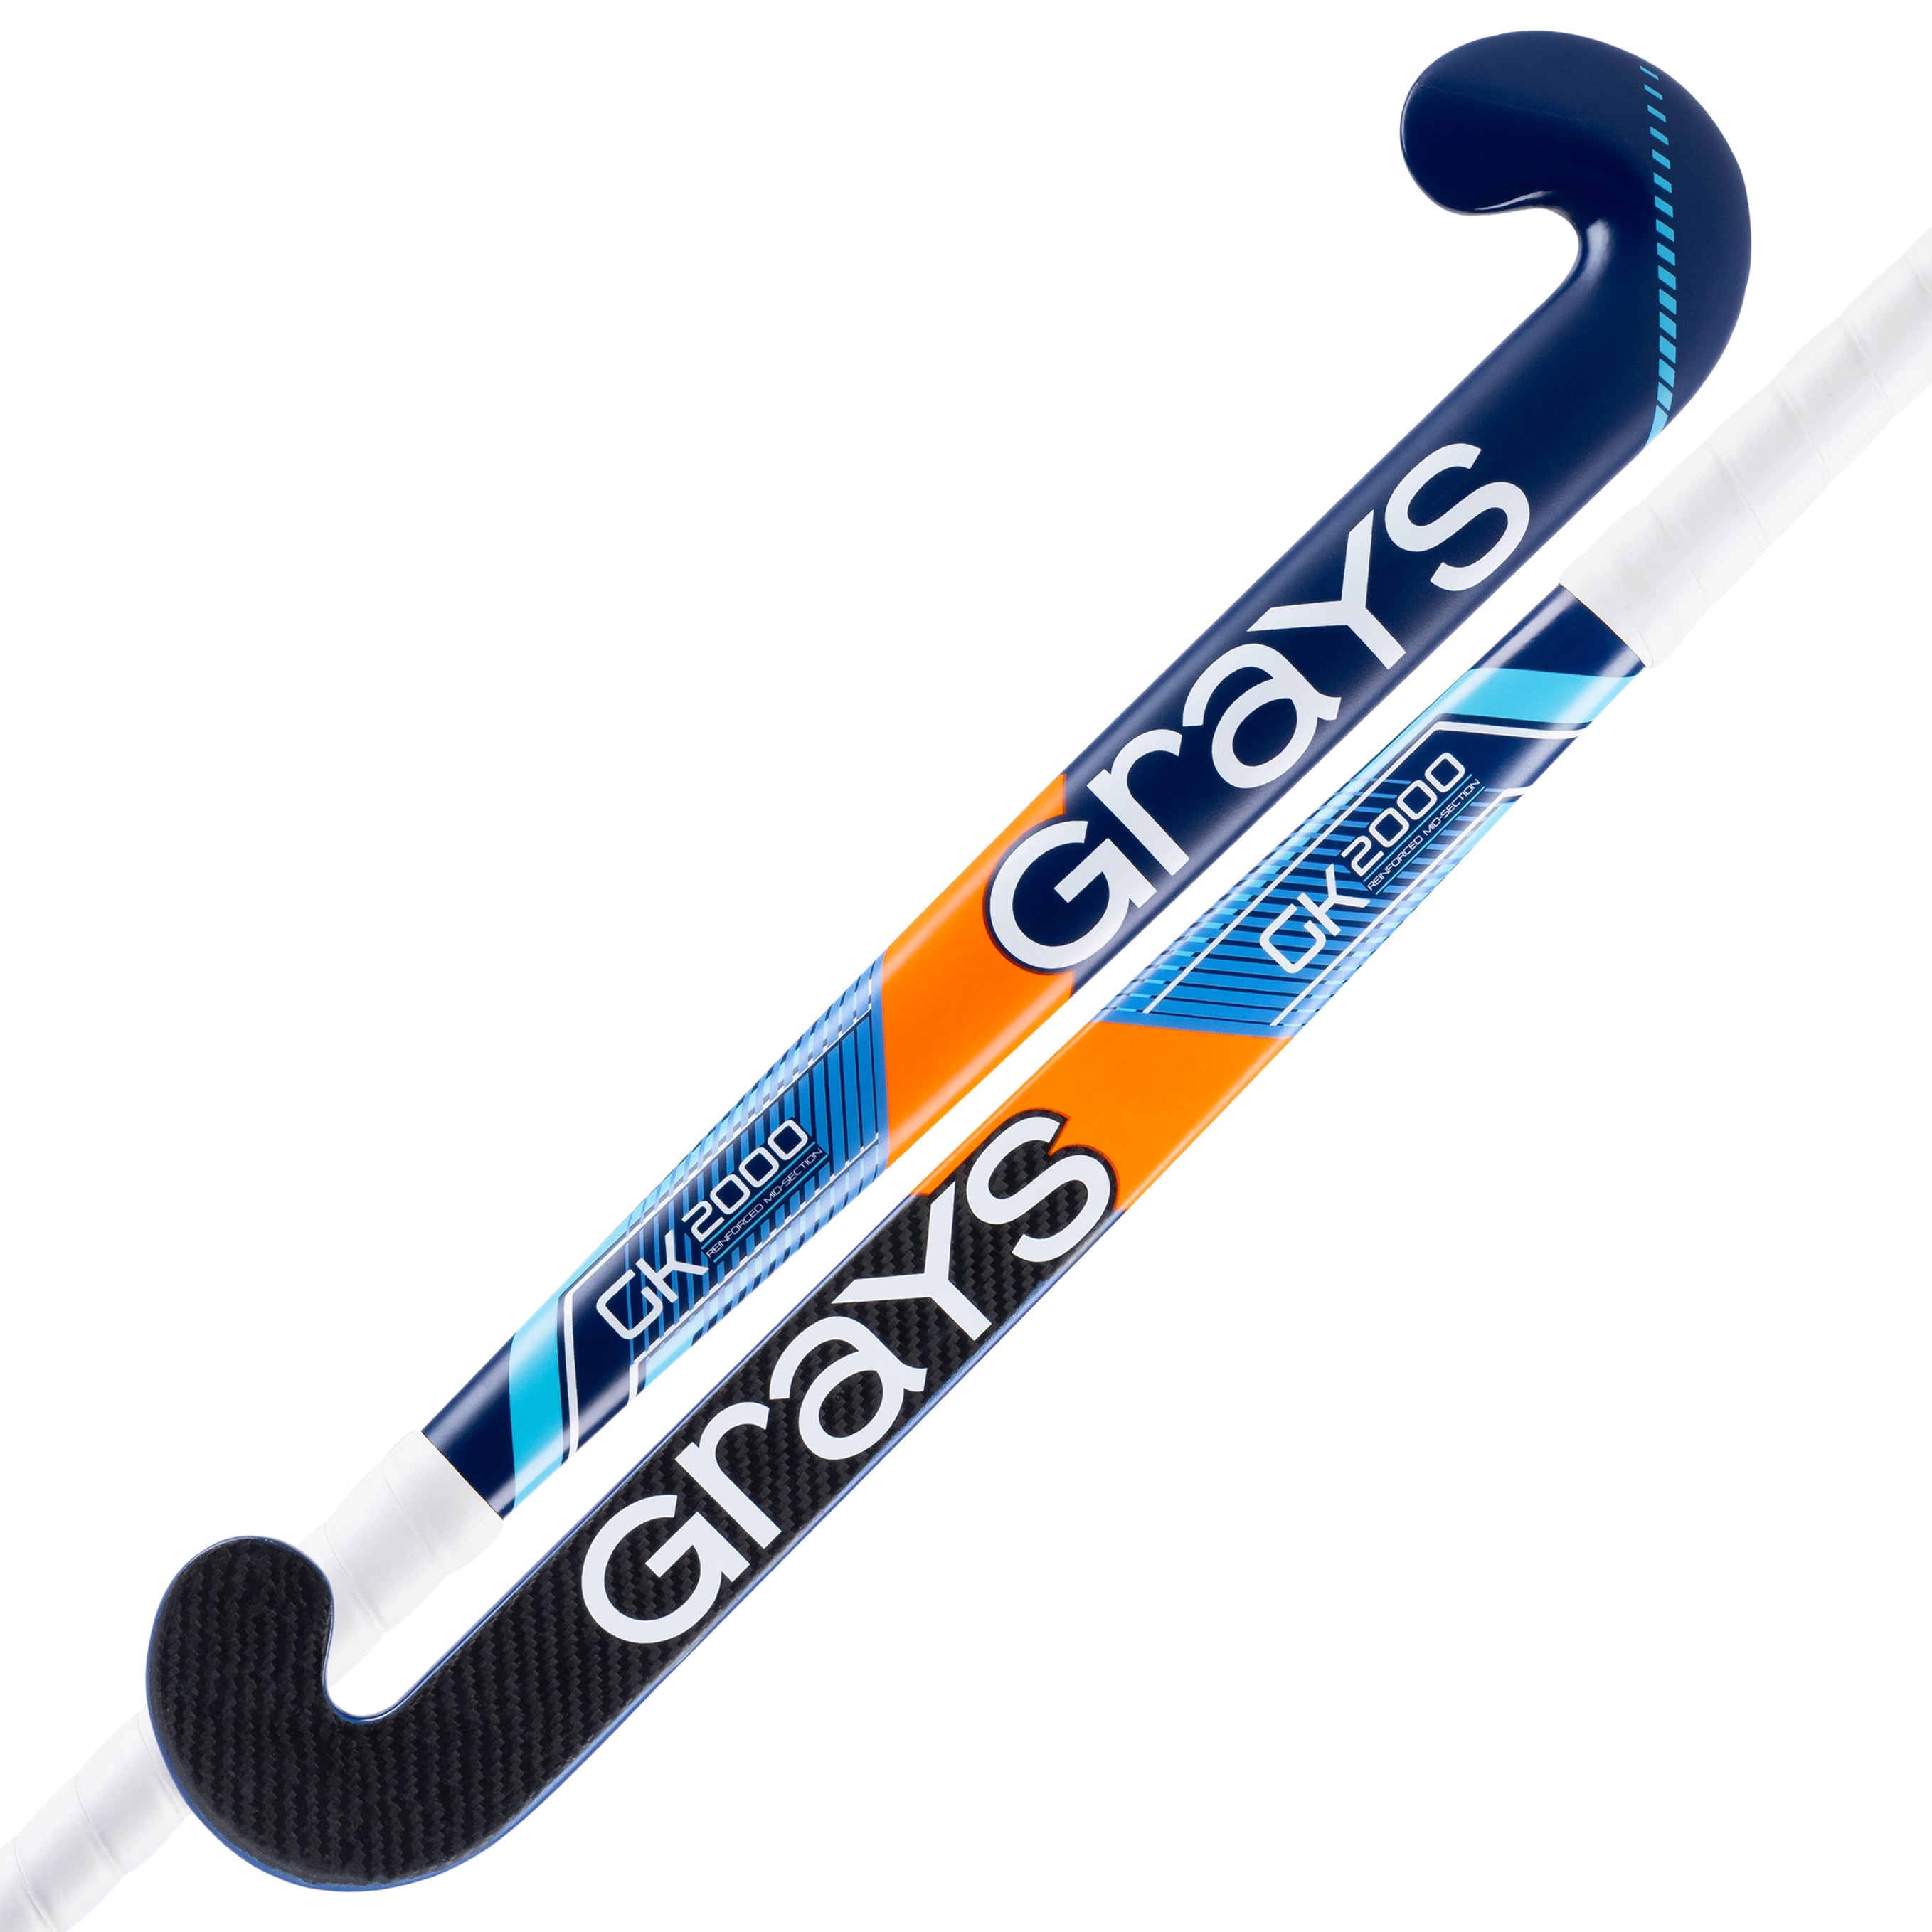 GK2000 Ultrabow composite goalie hockeystick